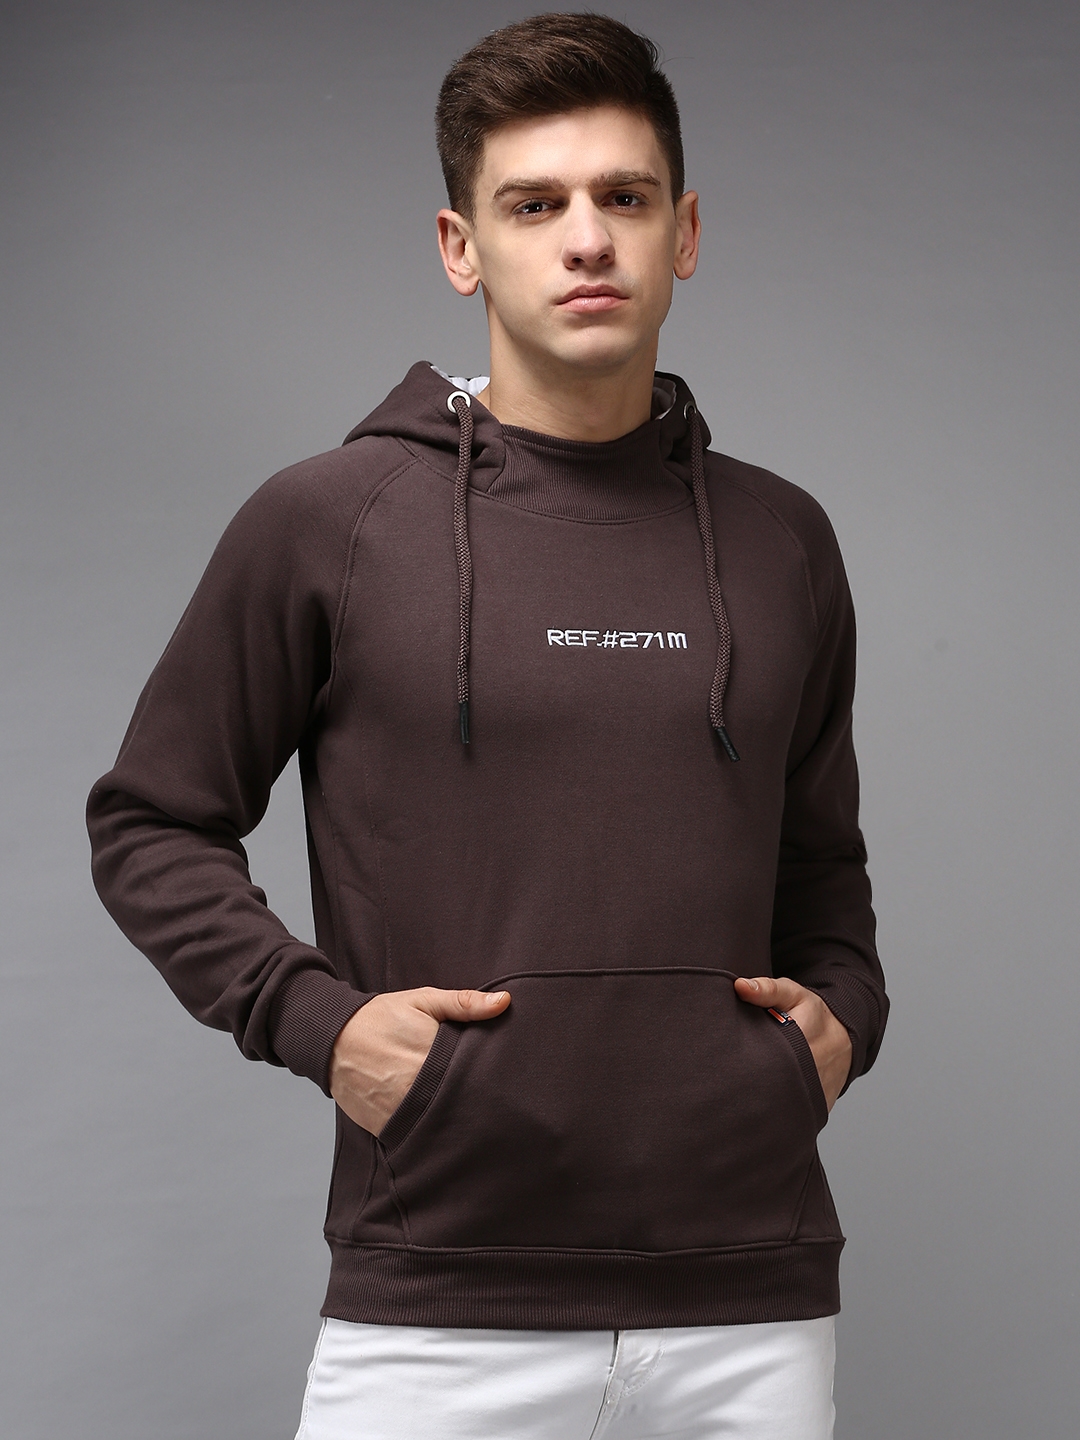 SHOWOFF Men's Hooded Neck Coffee Brown Solid Sweatshirt